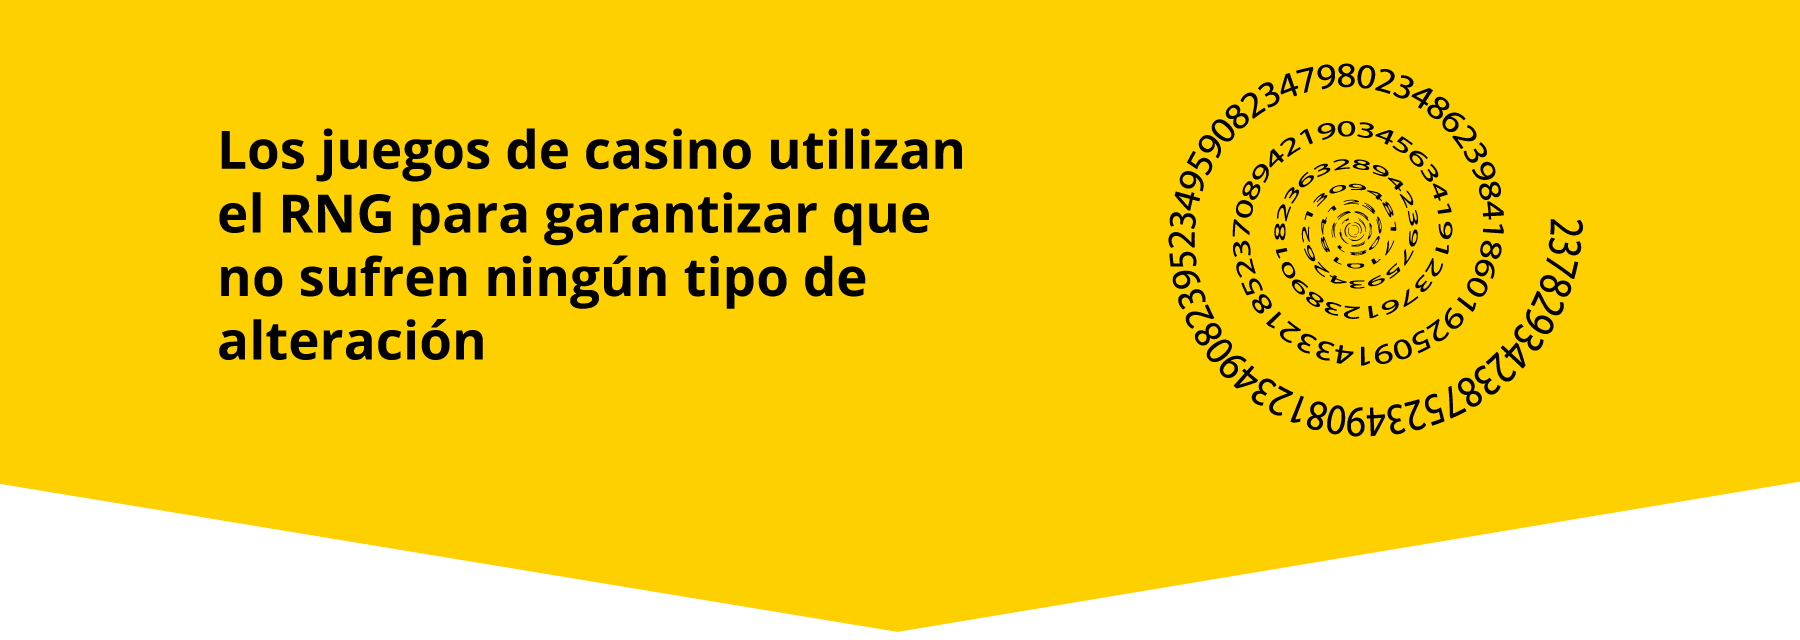 Sistema RNG casinos online Ecuador 